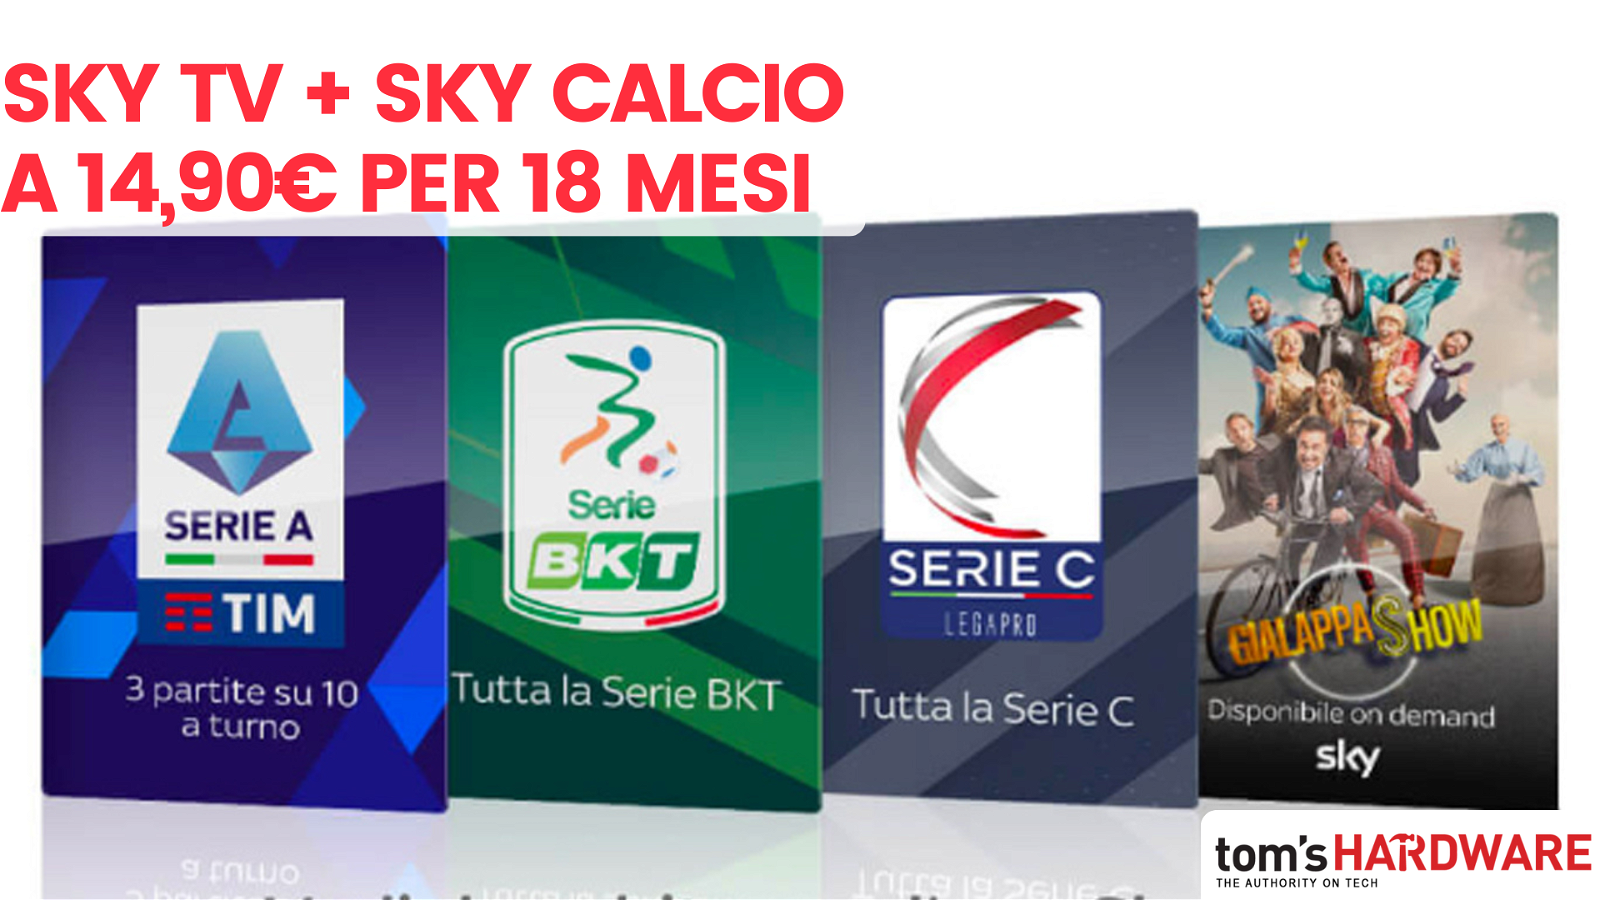 Immagine di Offerta TOP: Sky TV + Sky Calcio a 14,90€ per 18 mesi